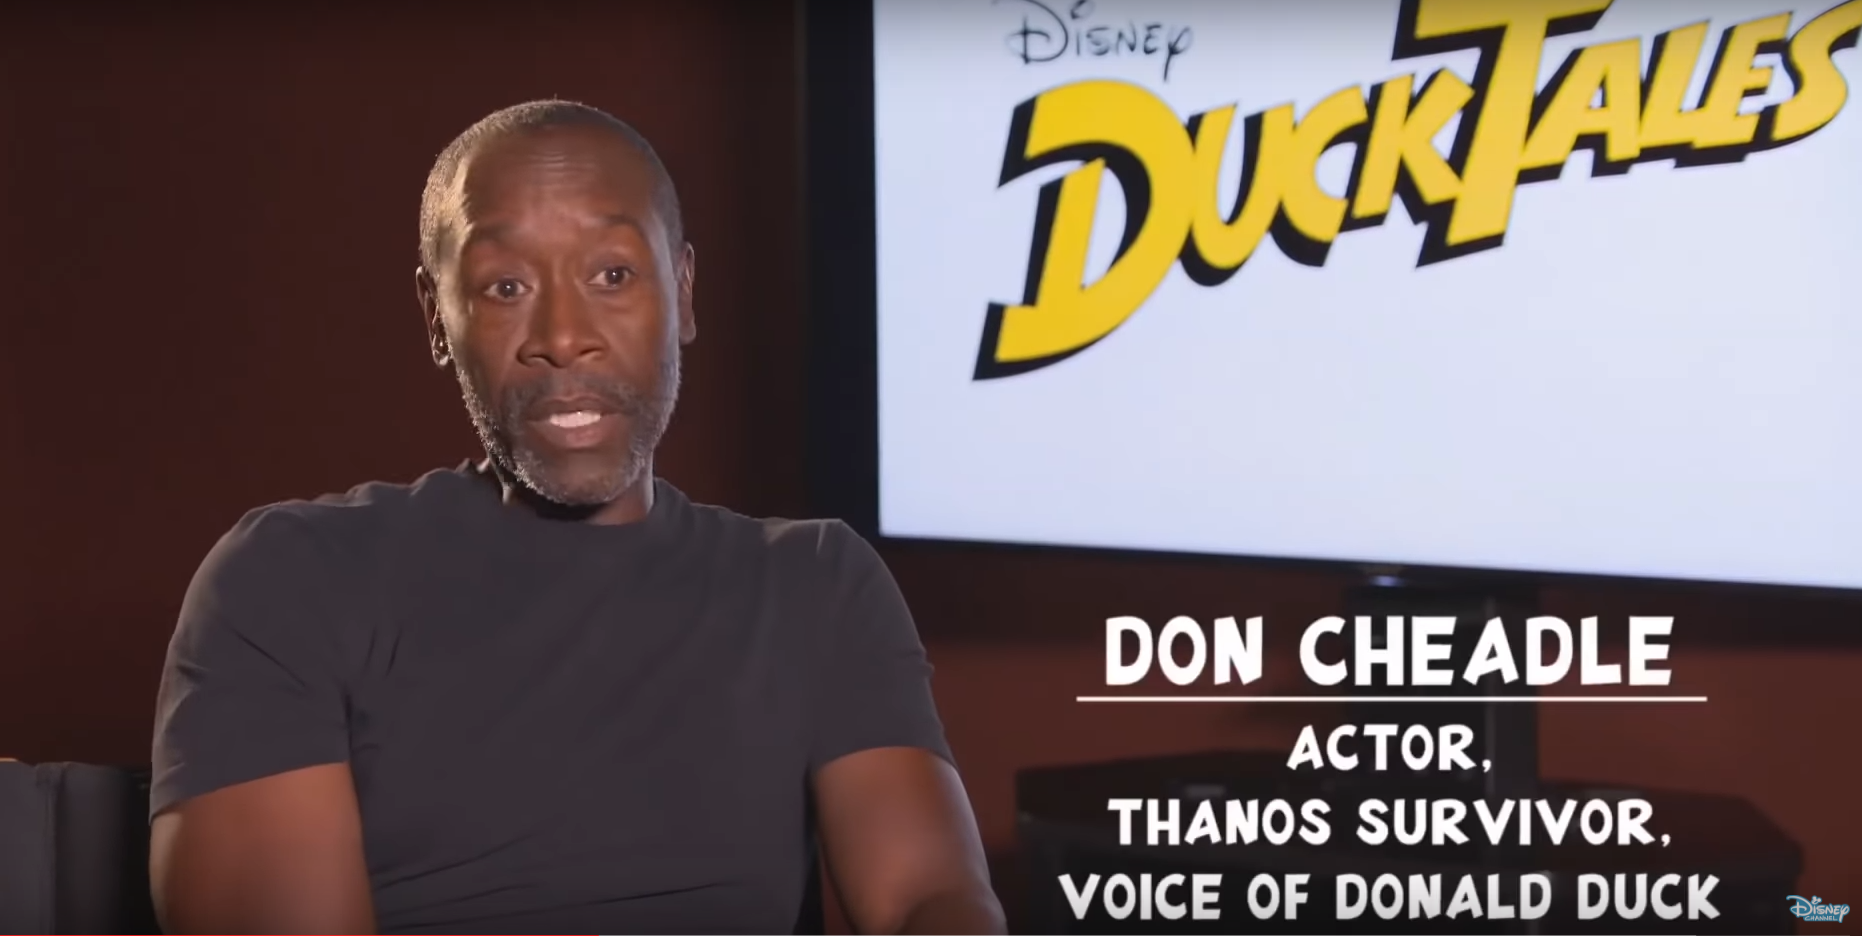 don cheadle thanos survivor - Disney Diltzl Don Cheadle Actor Thanos Survivor, Voice Of Donald Duck